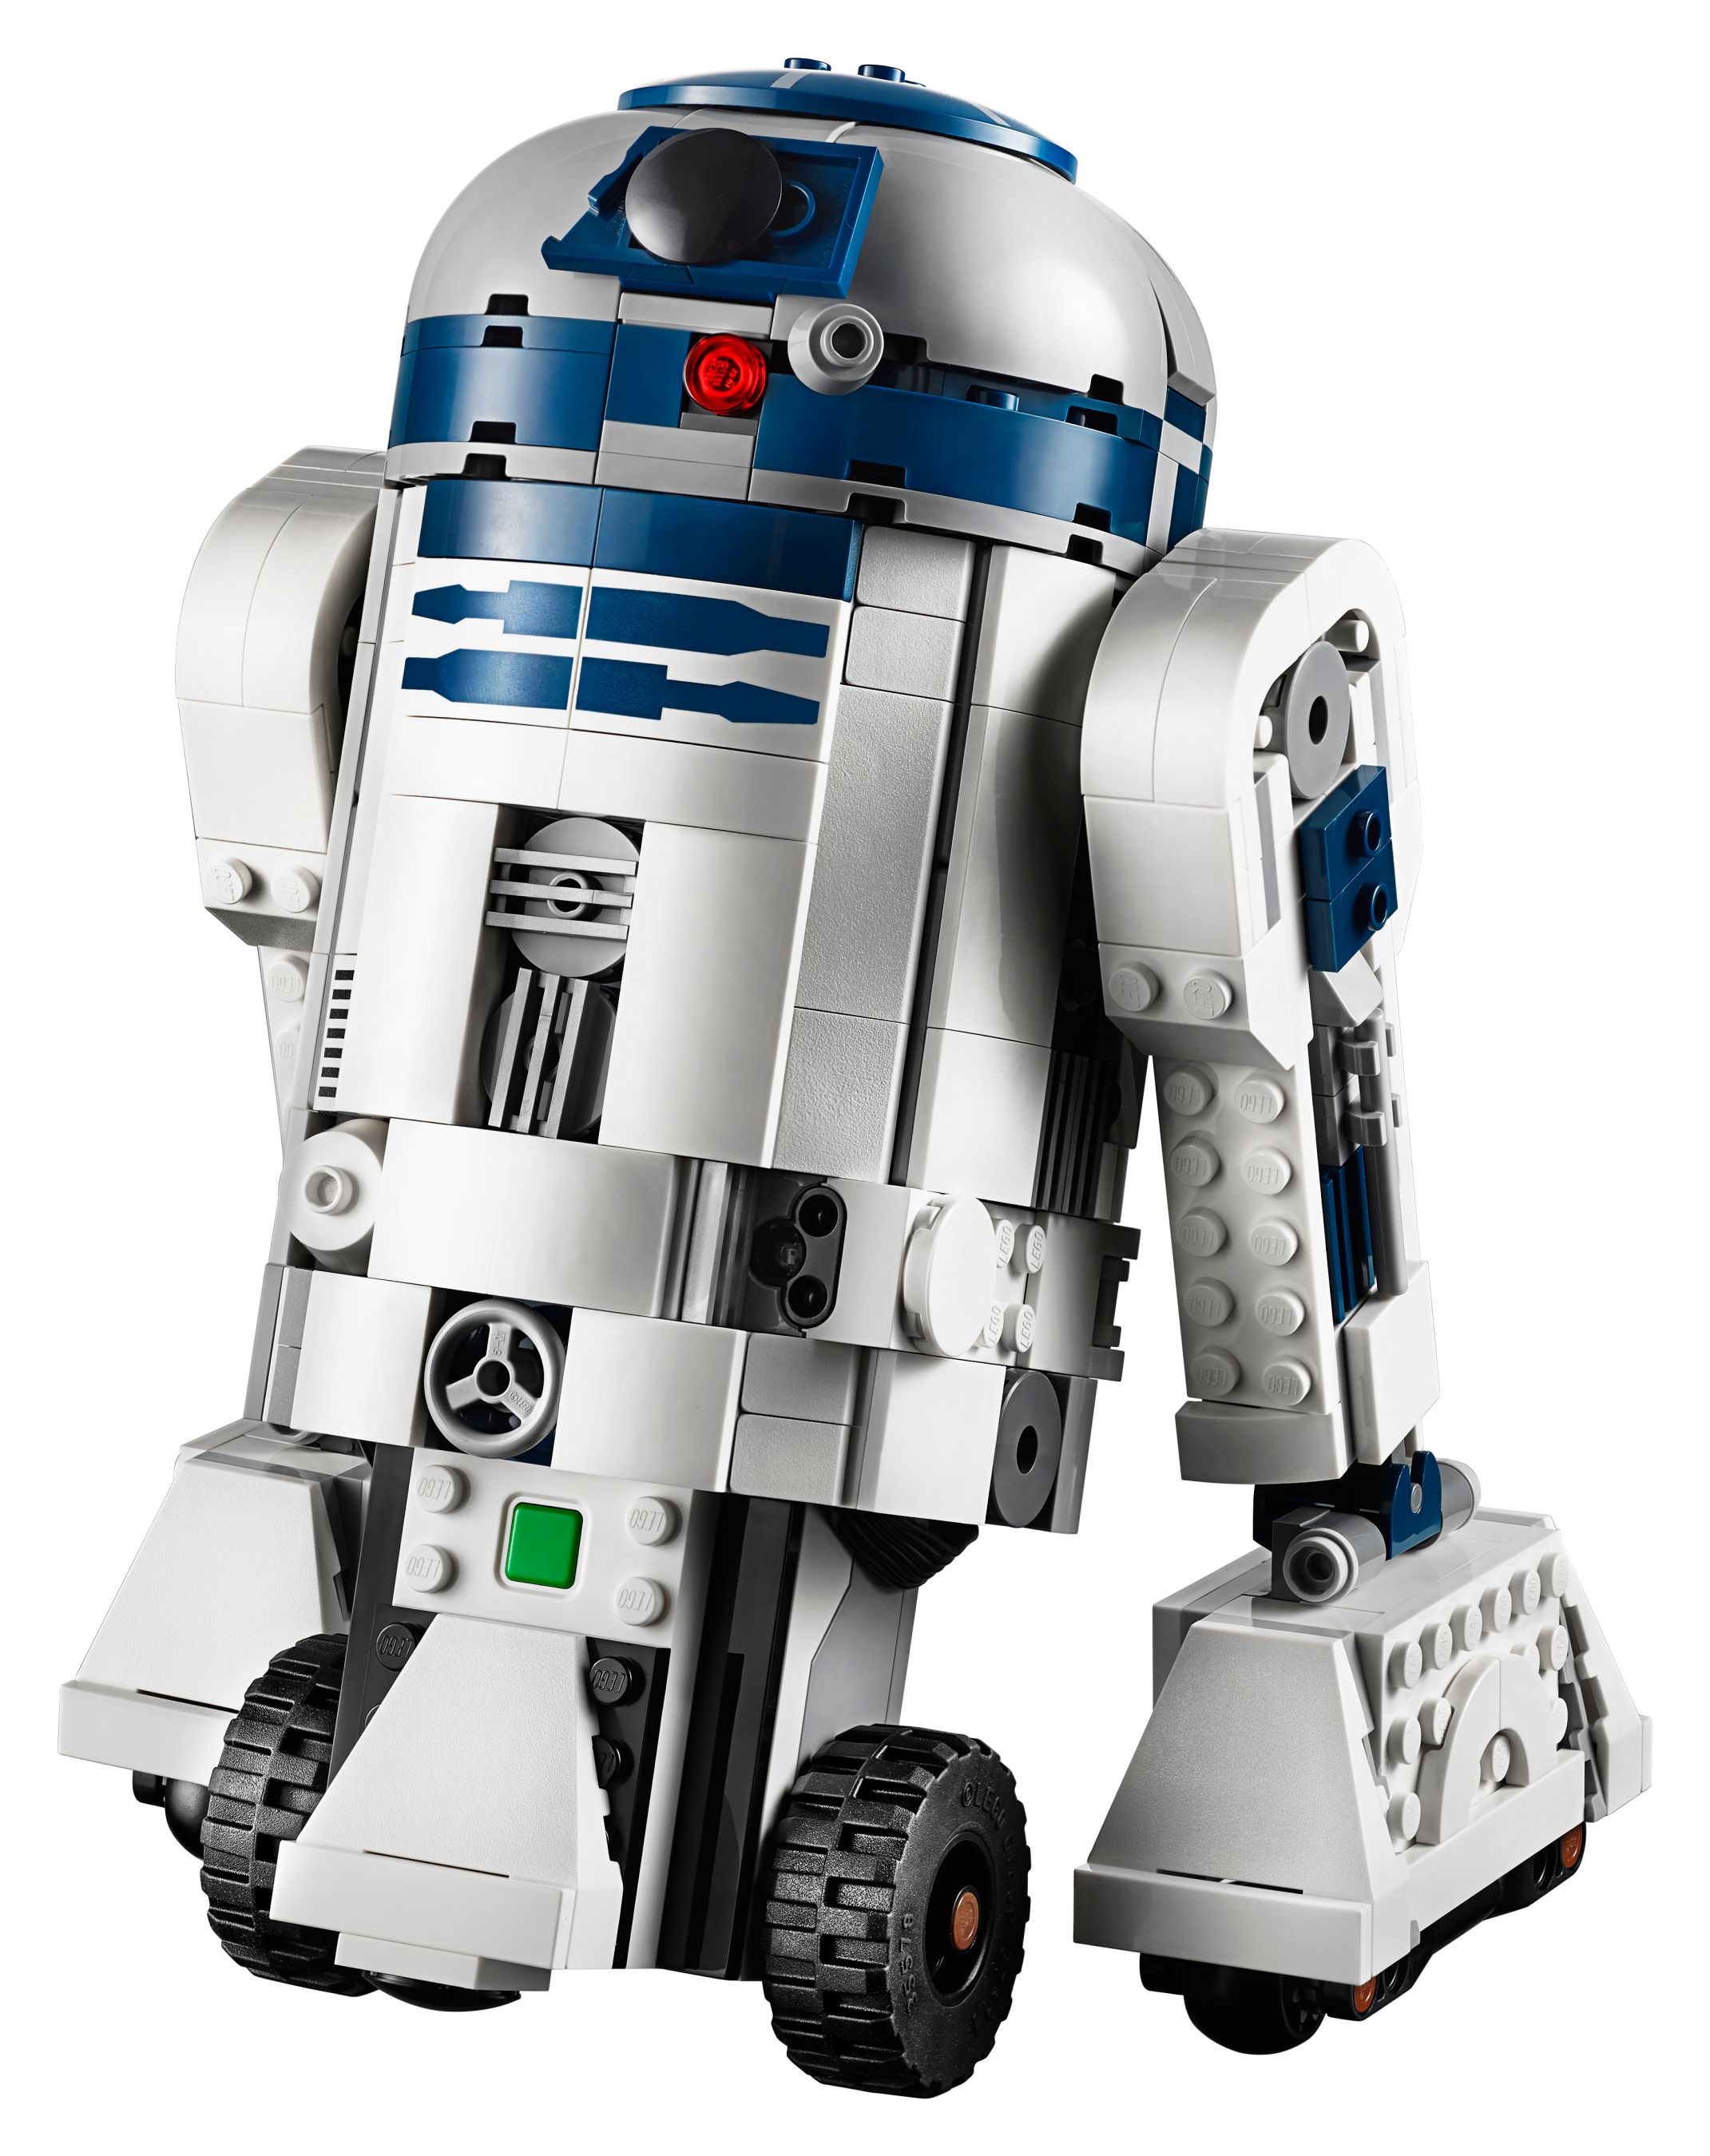 LEGO BOOST 75253 Star Wars™ BOOST Droide LEGO_75253_alt16.jpg